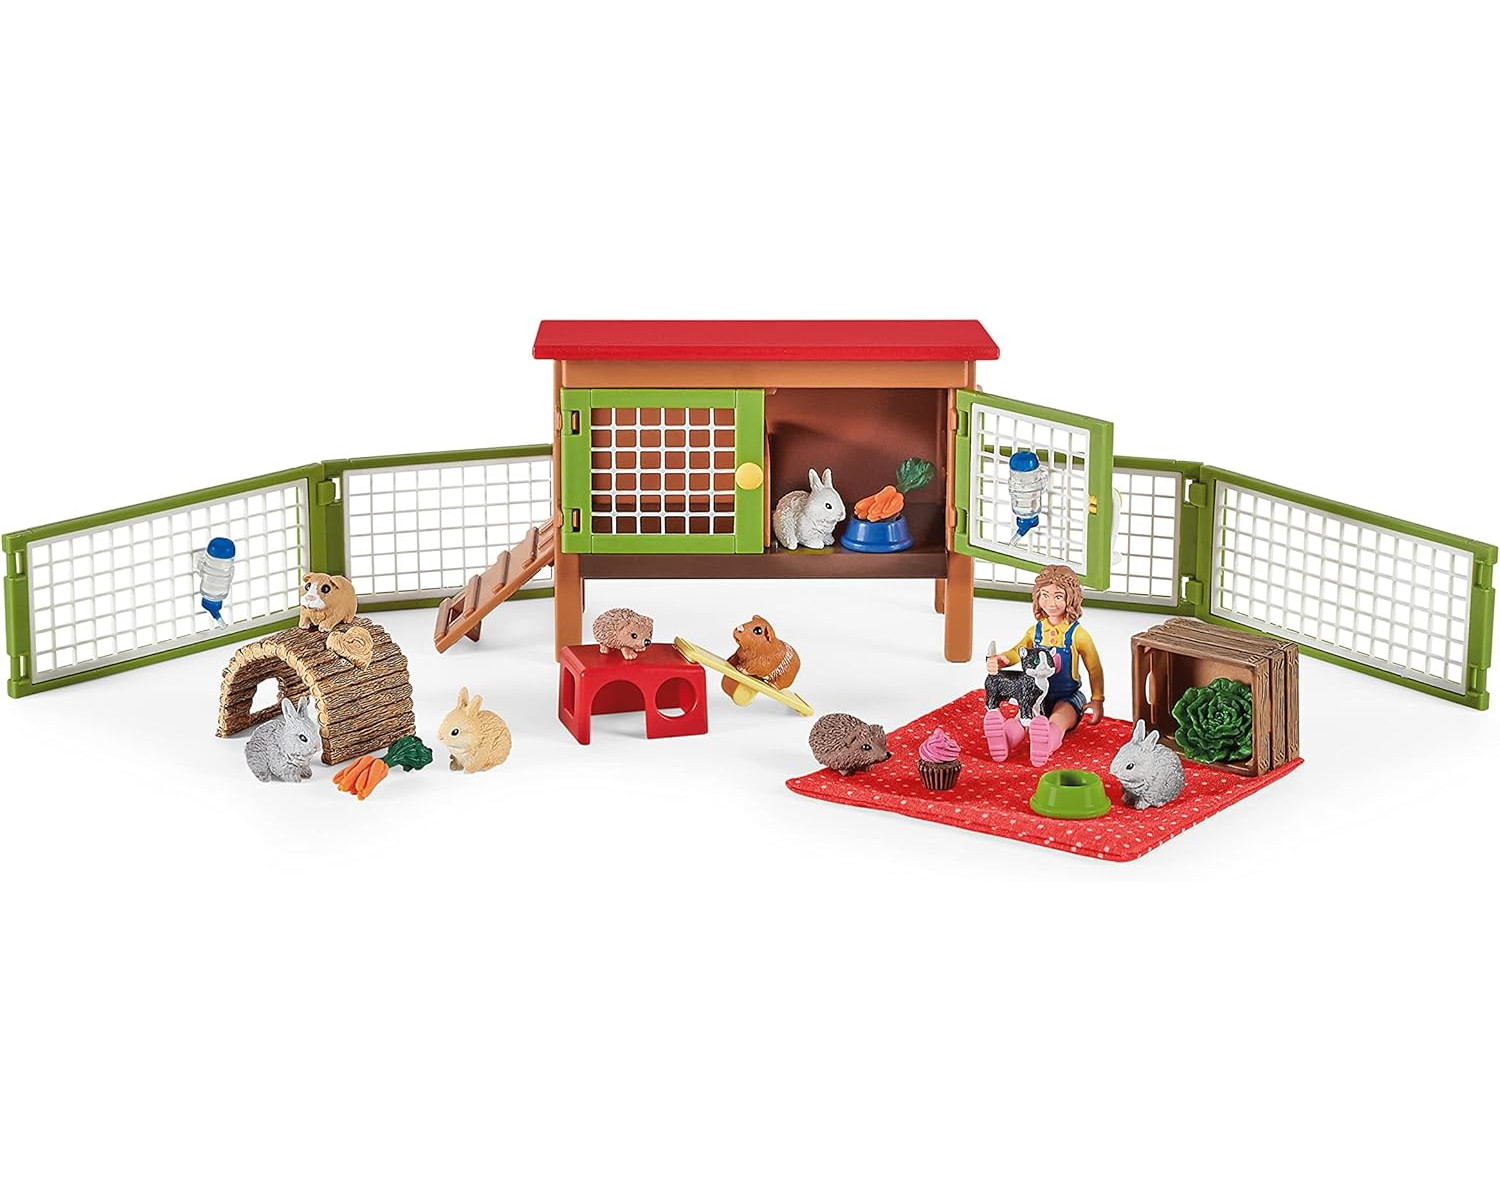 SCHLEICH Tierfiguren Farm World - Picknick Haustieren kleinen Spielfiguren mit